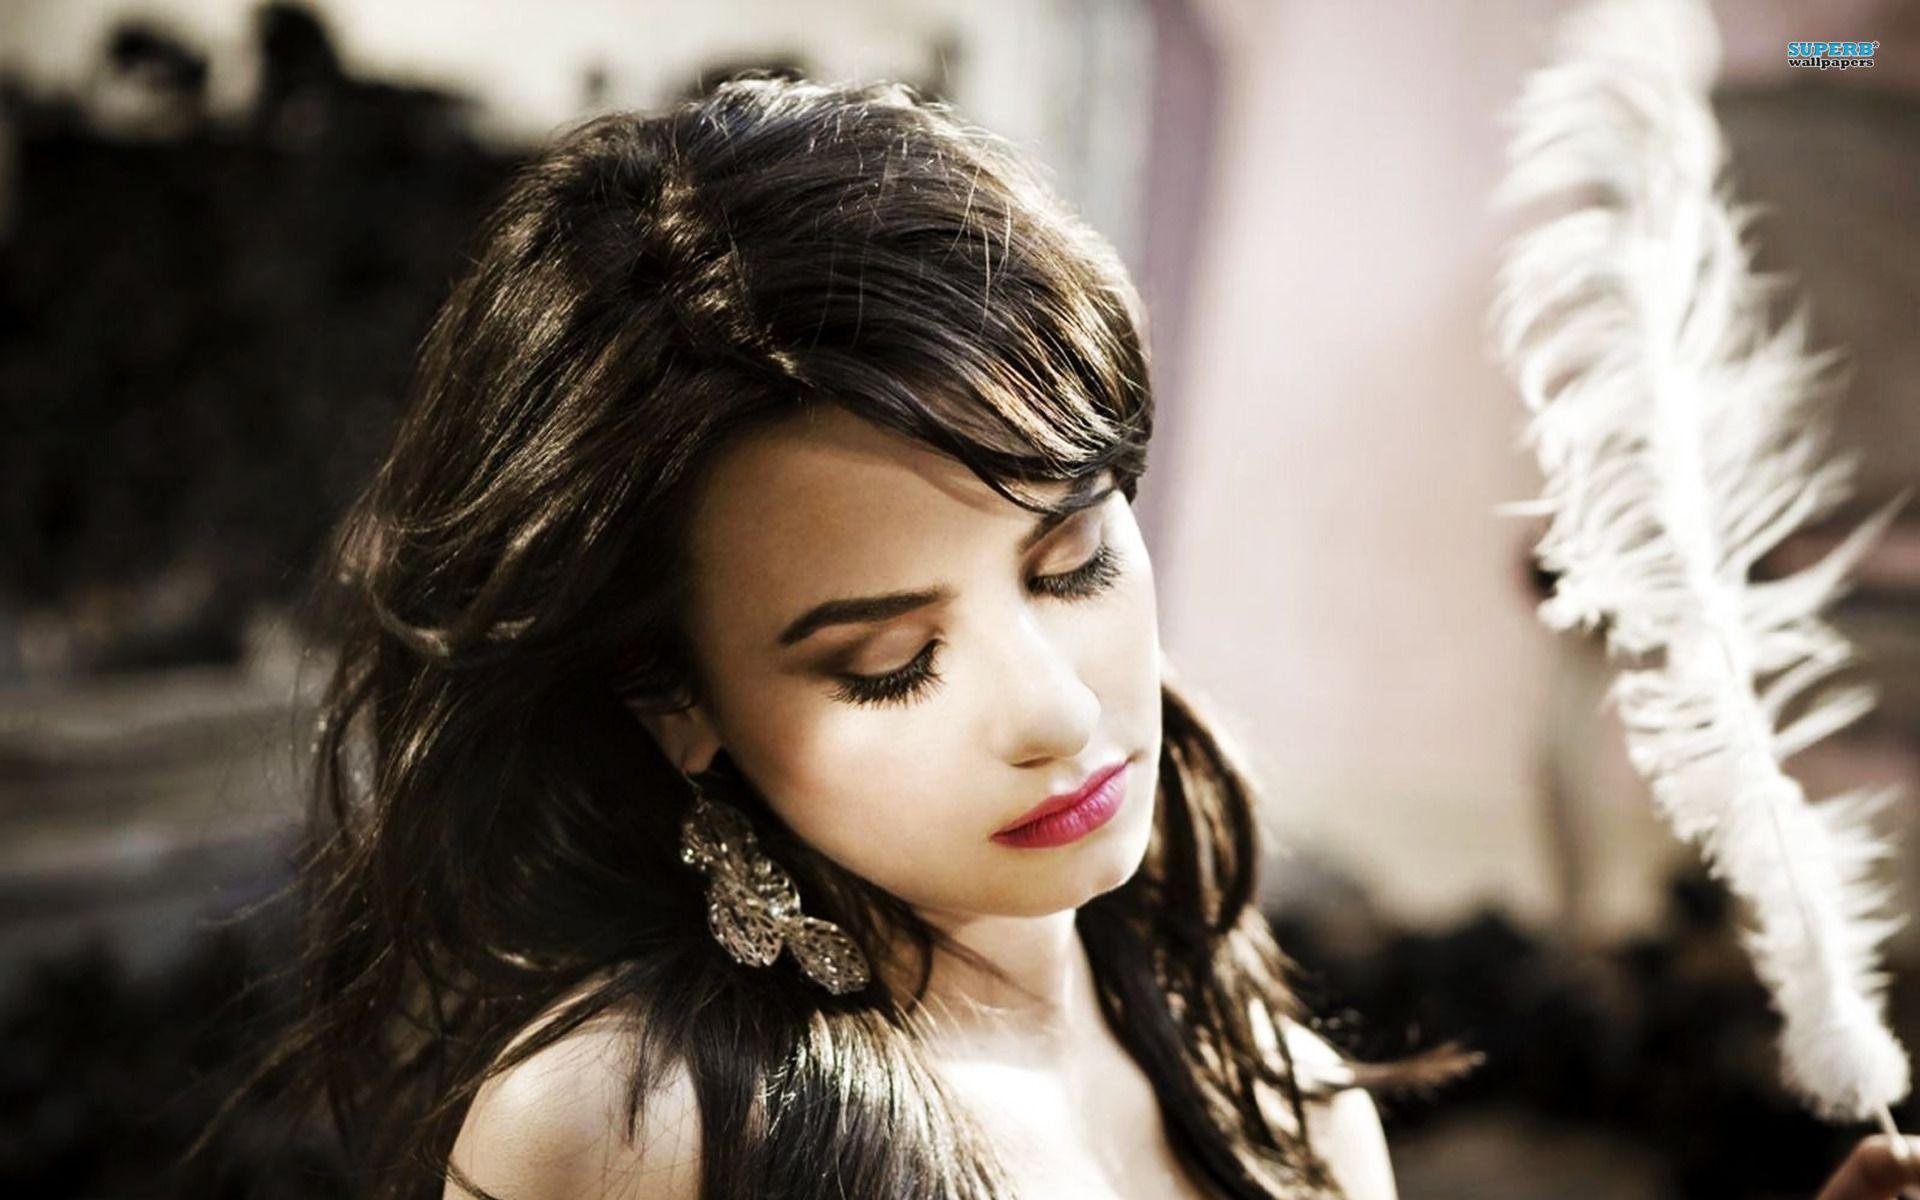 CA49: Demi Lovato Wallpaper, Demi Lovato Pics in Best Resolutions, FHDQ